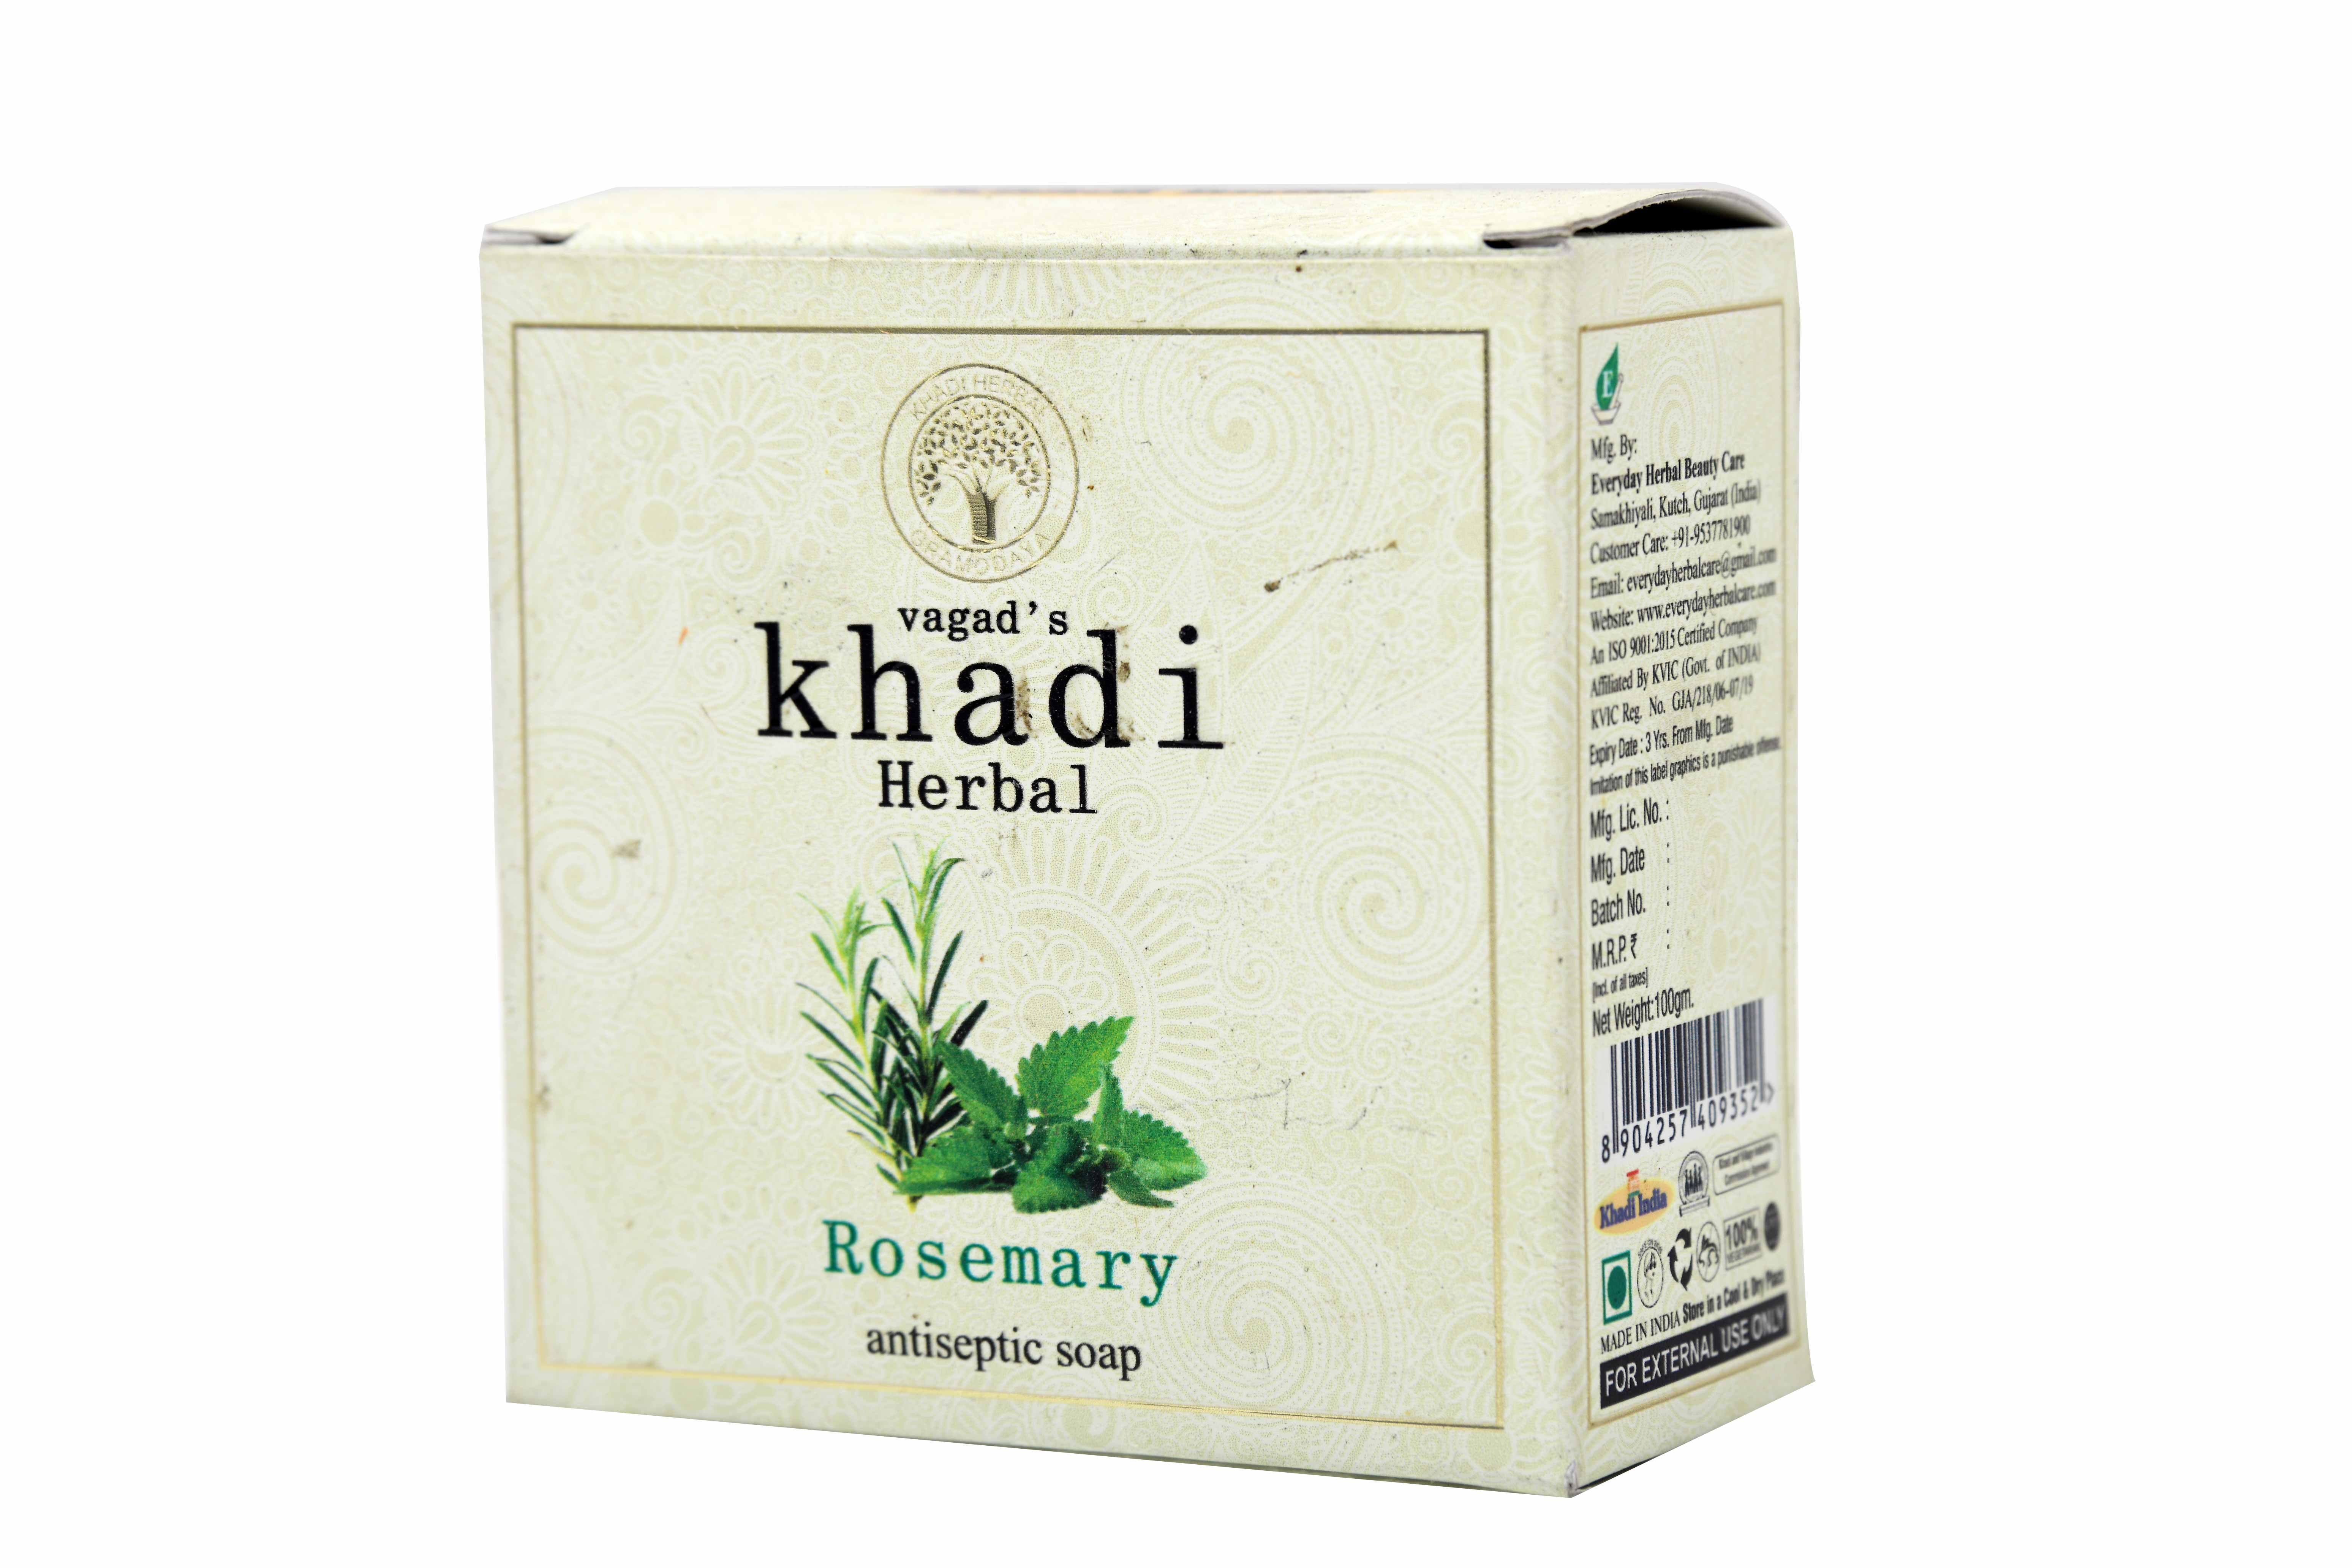 Vagad's Khadi Rosemary Antiseptic Milky Soap